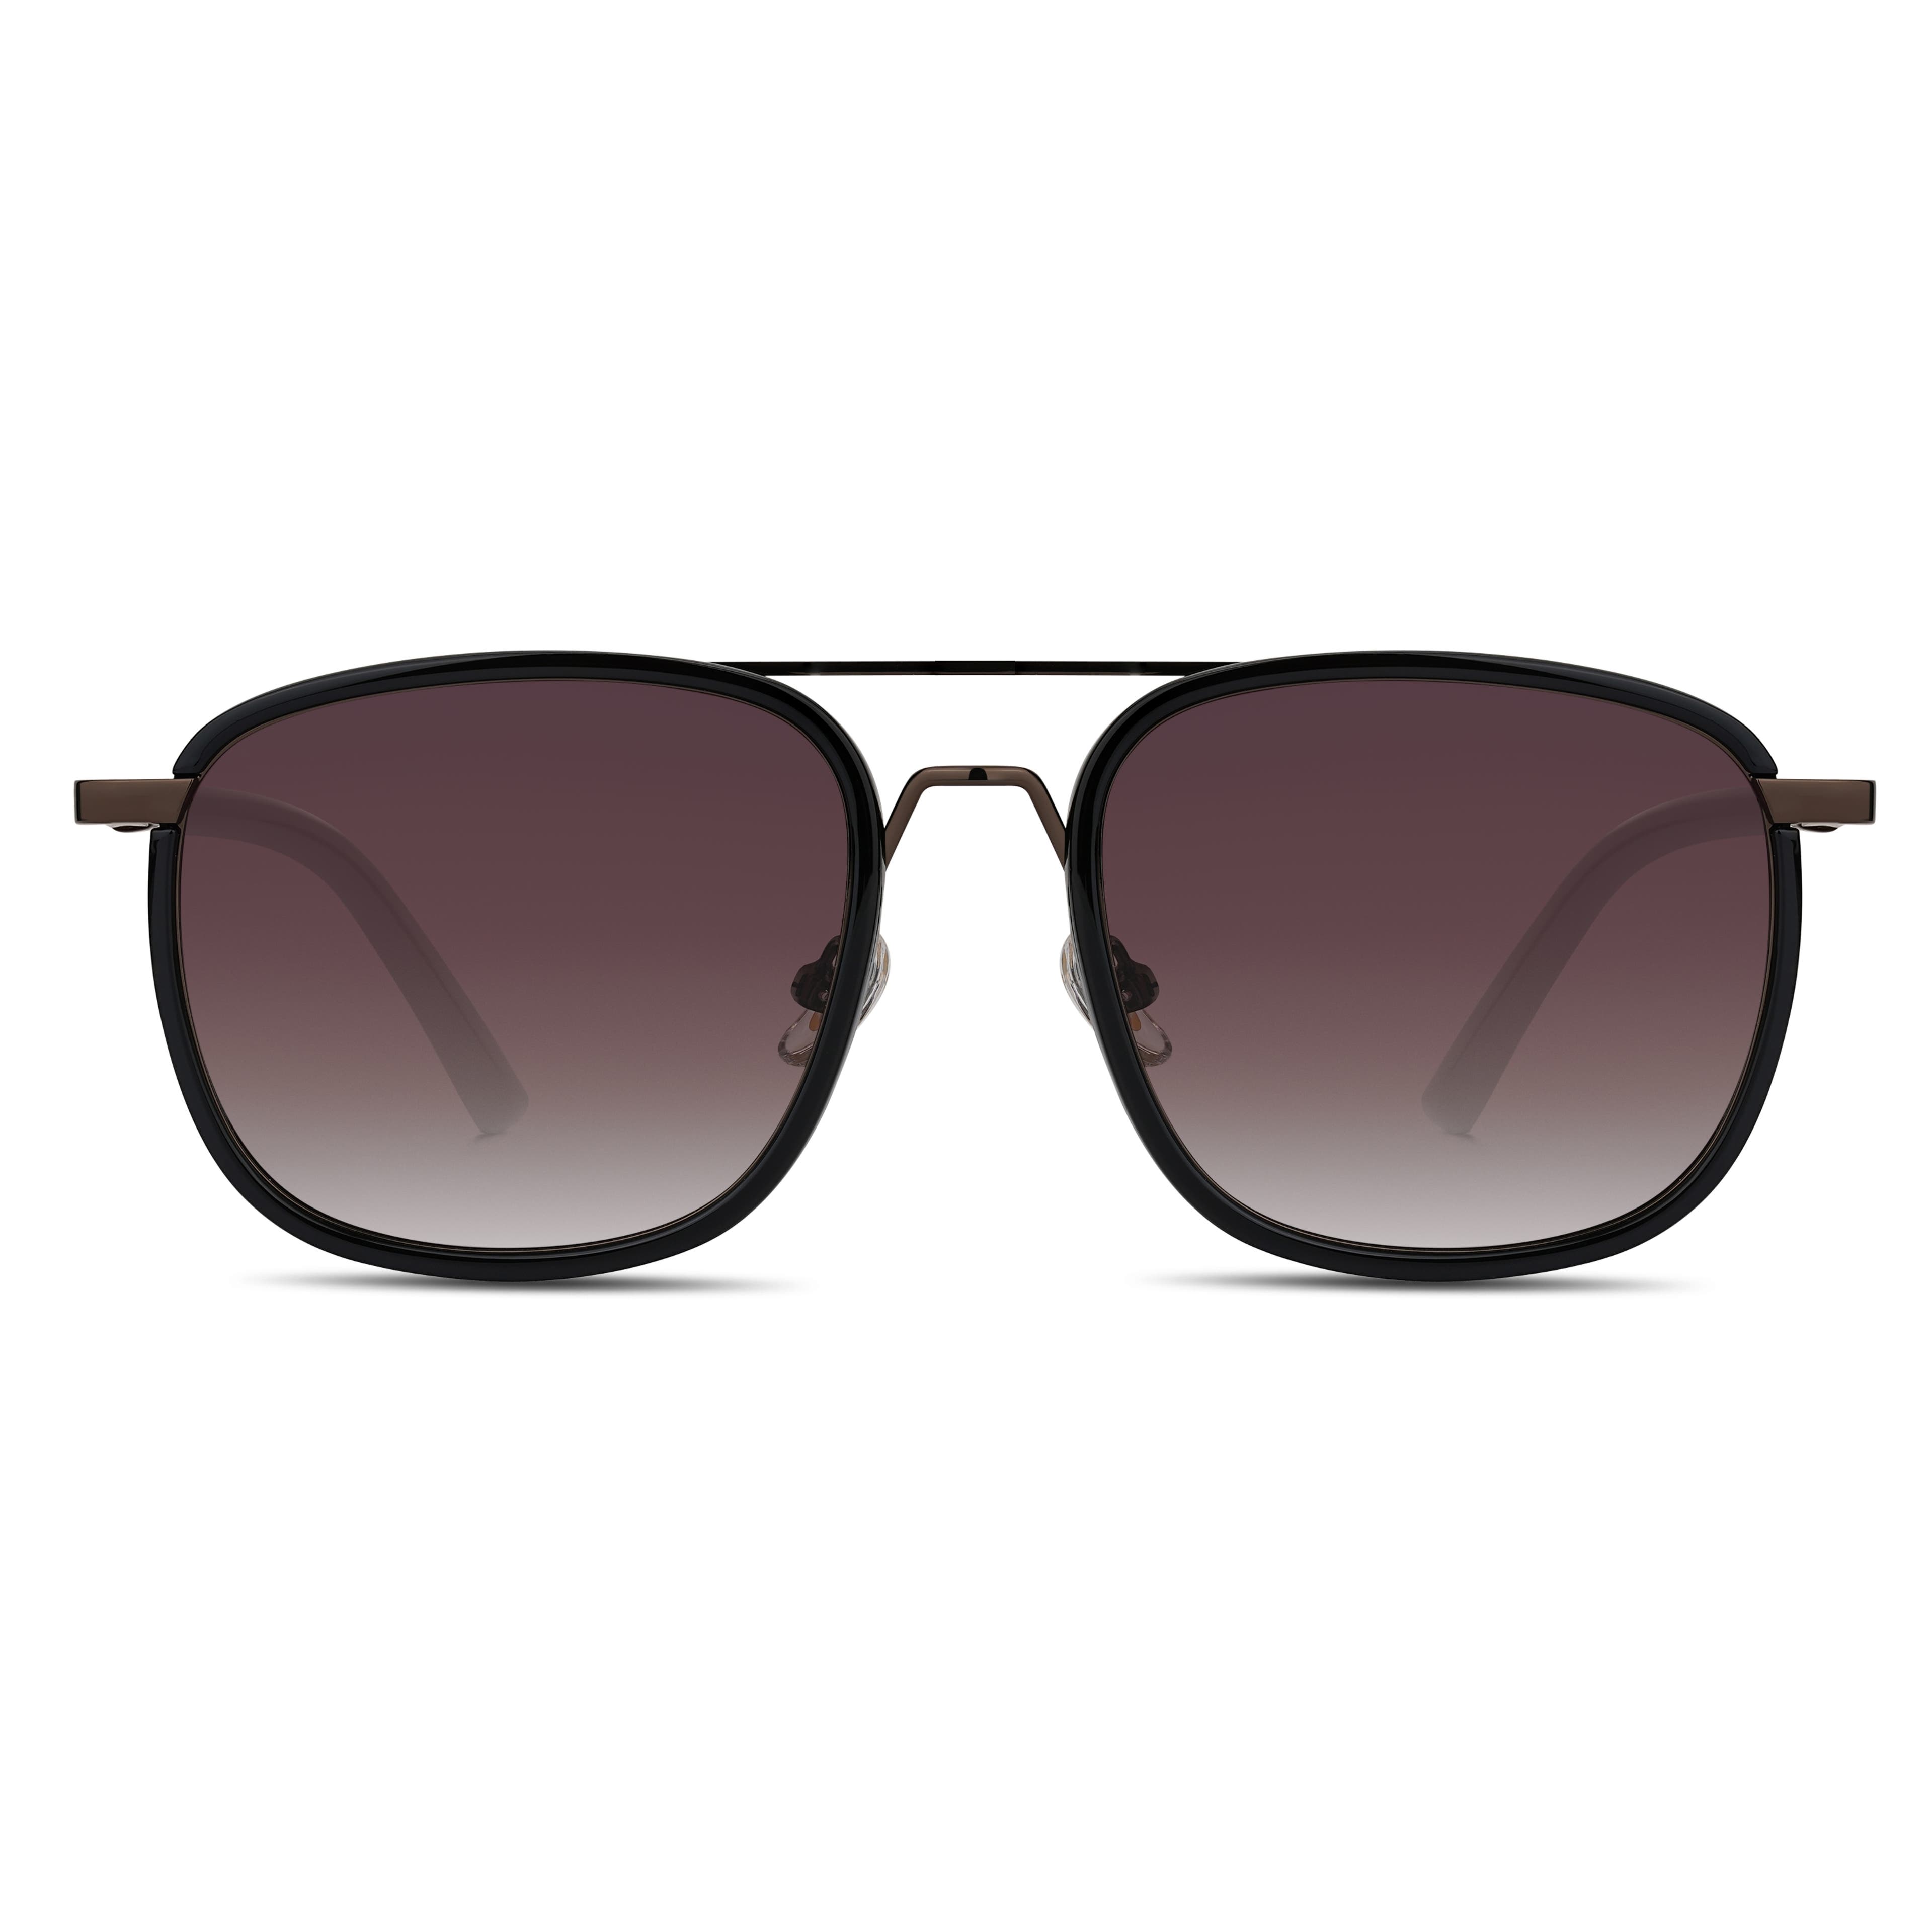 Gafas de Sol Polarizadas con Doble Puente egradado en negro y marrón